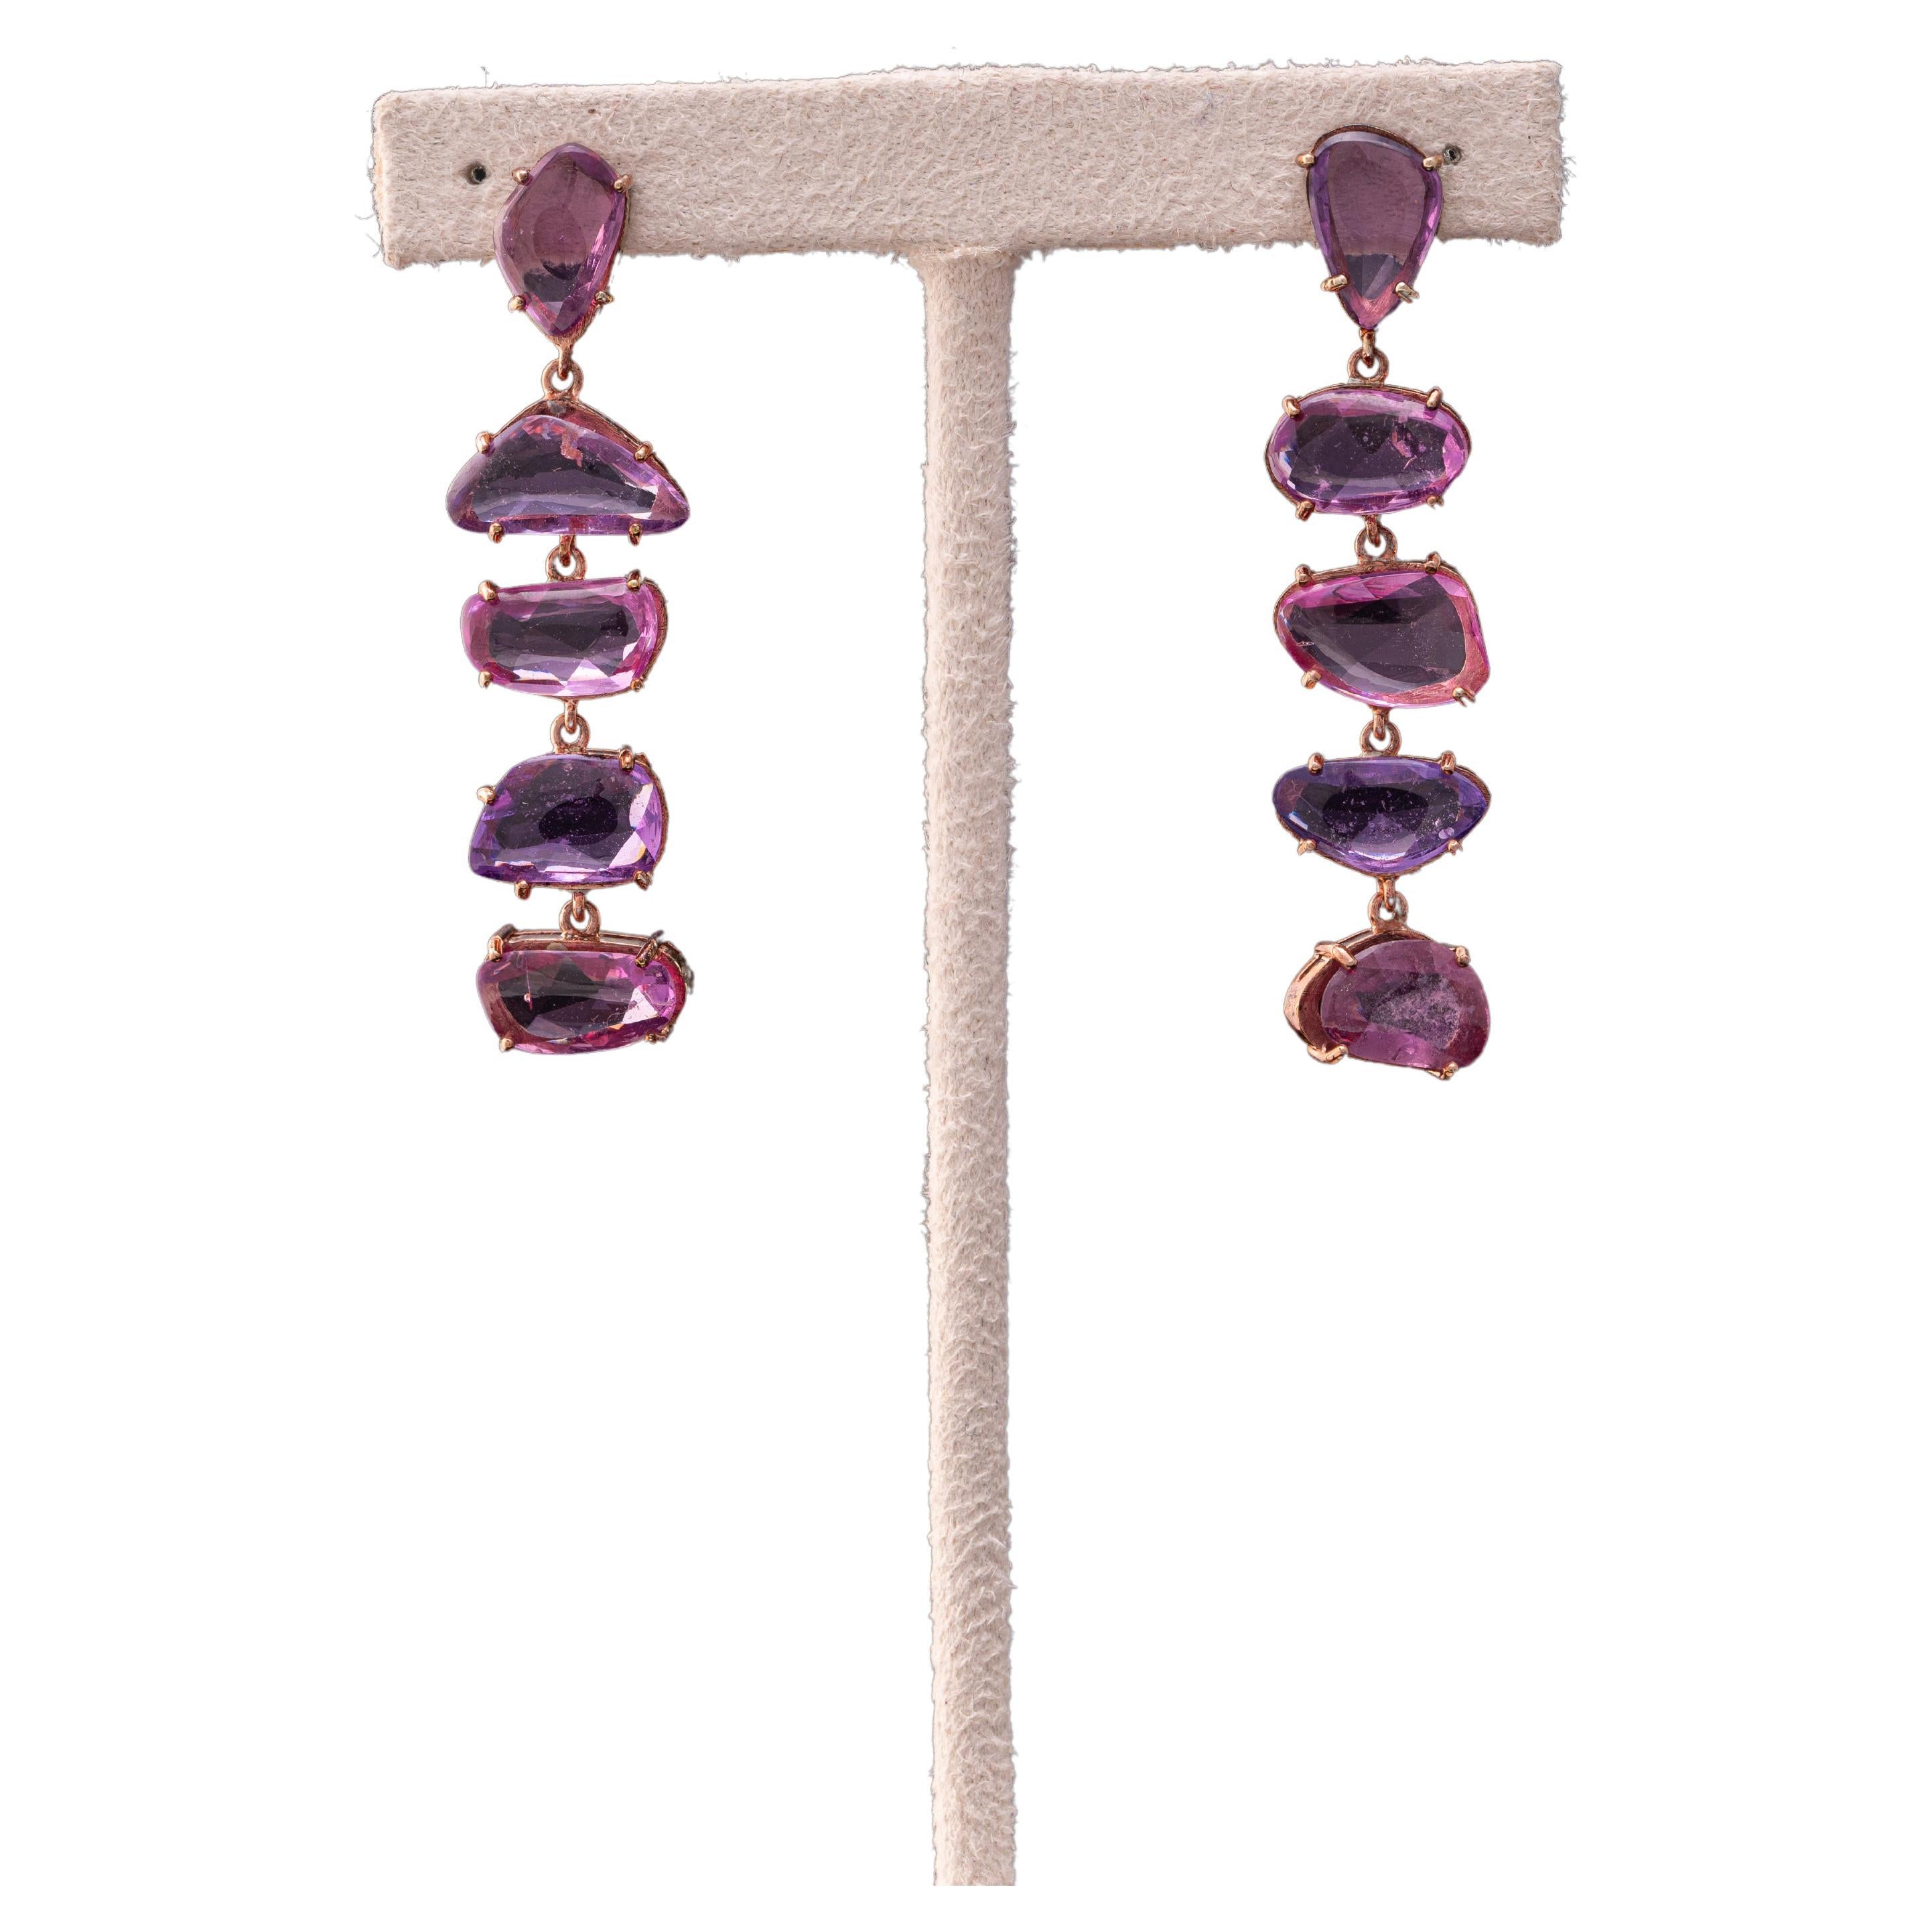 Darshna von Royaal Stones präsentiert eine exklusive rosa Saphir-Ohrringe. Dieser besondere Ohrring zeigt baumelnde rosa Saphire im Rosenschliff, die in Roségold gefasst sind, und wird so gestaltet, dass er elegant auf den Träger fällt. 

Rose Rosa